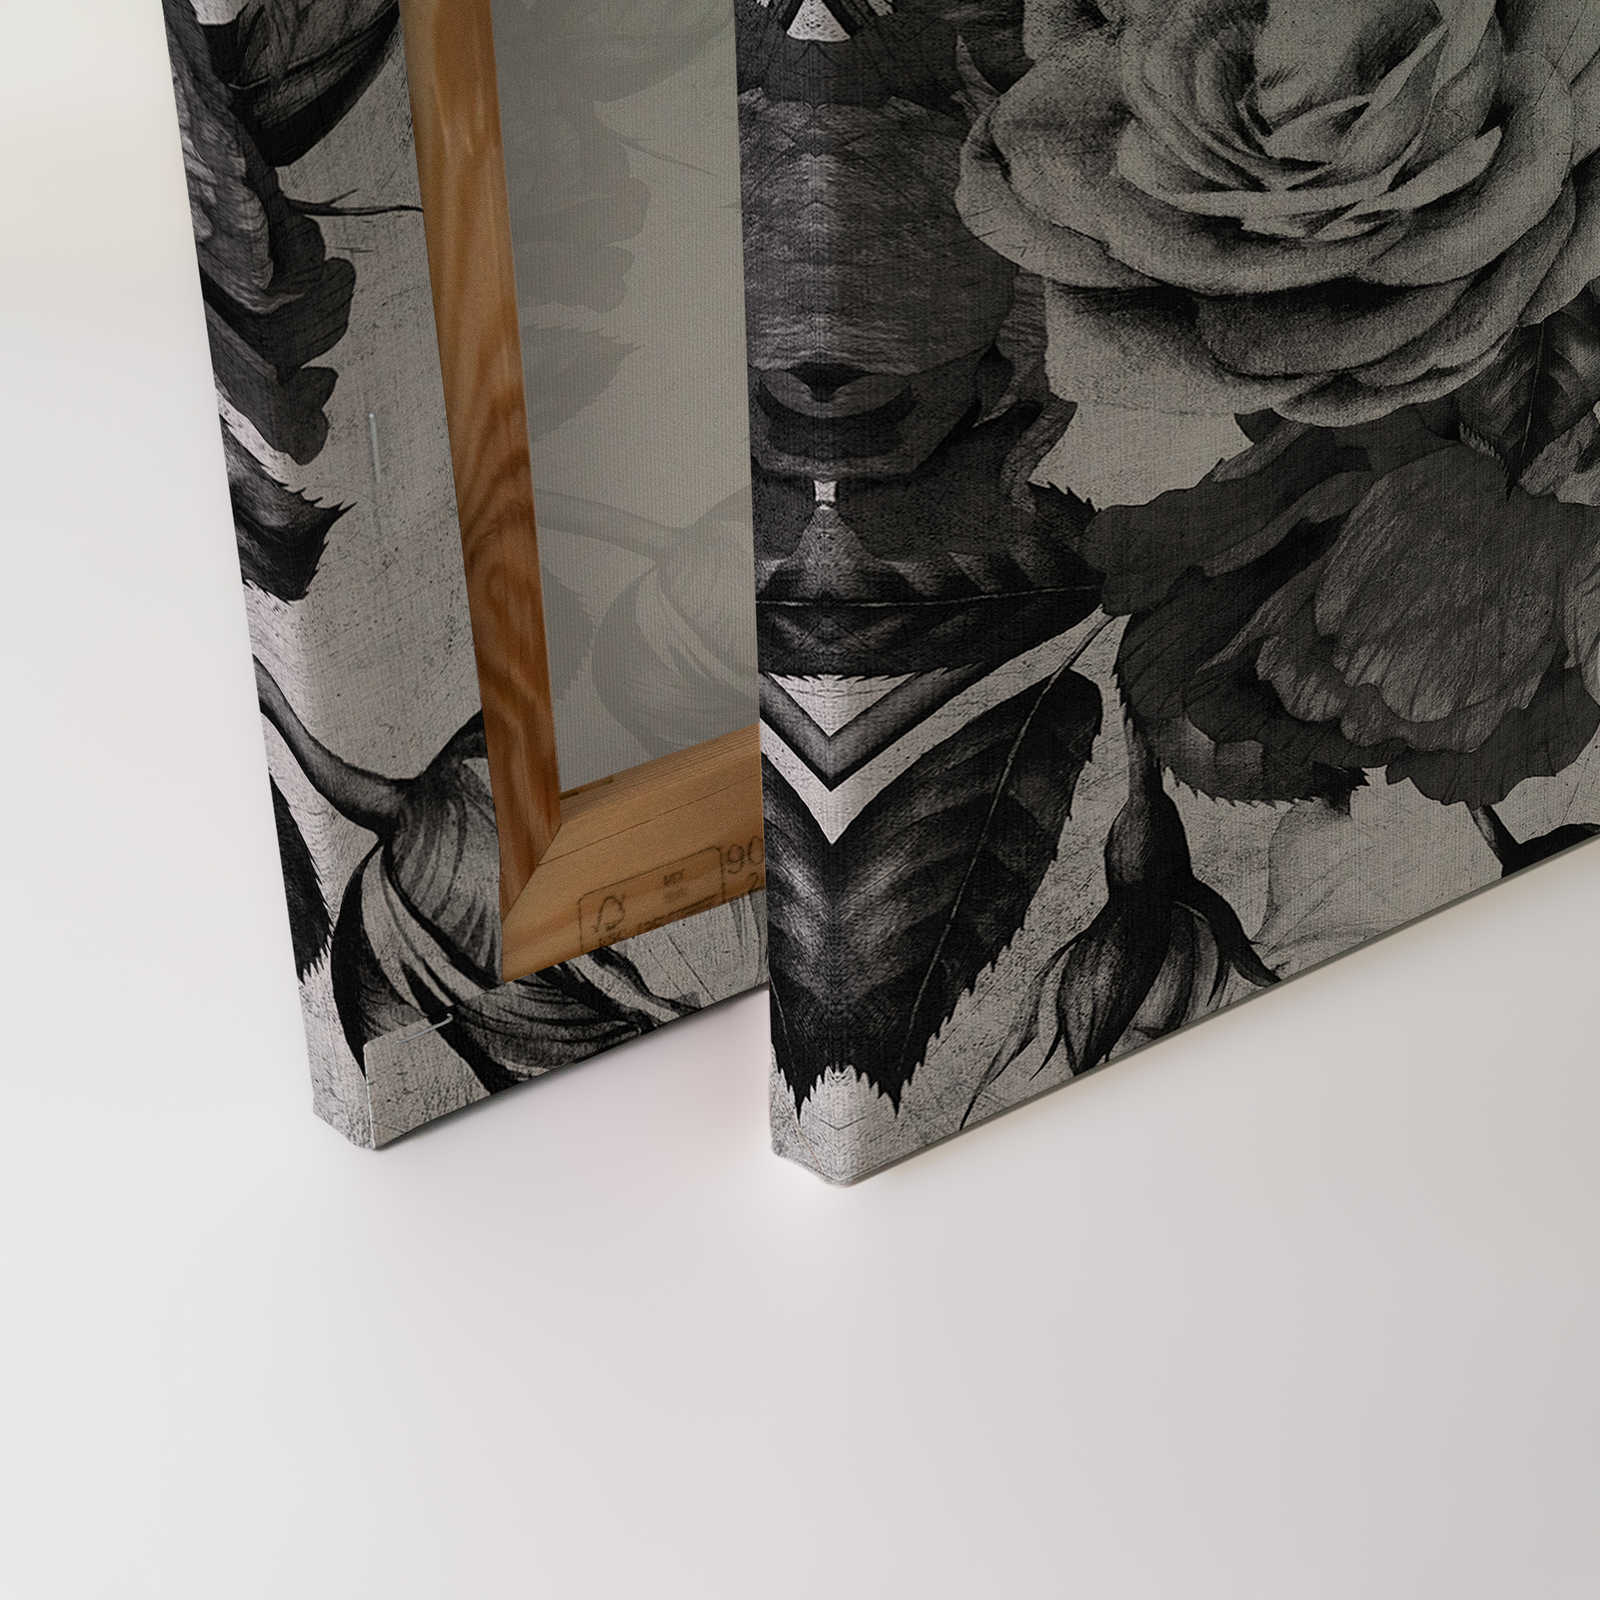             Spanish rose 1 - toile de roses avec fleurs en noir et blanc - 1,20 m x 0,80 m
        